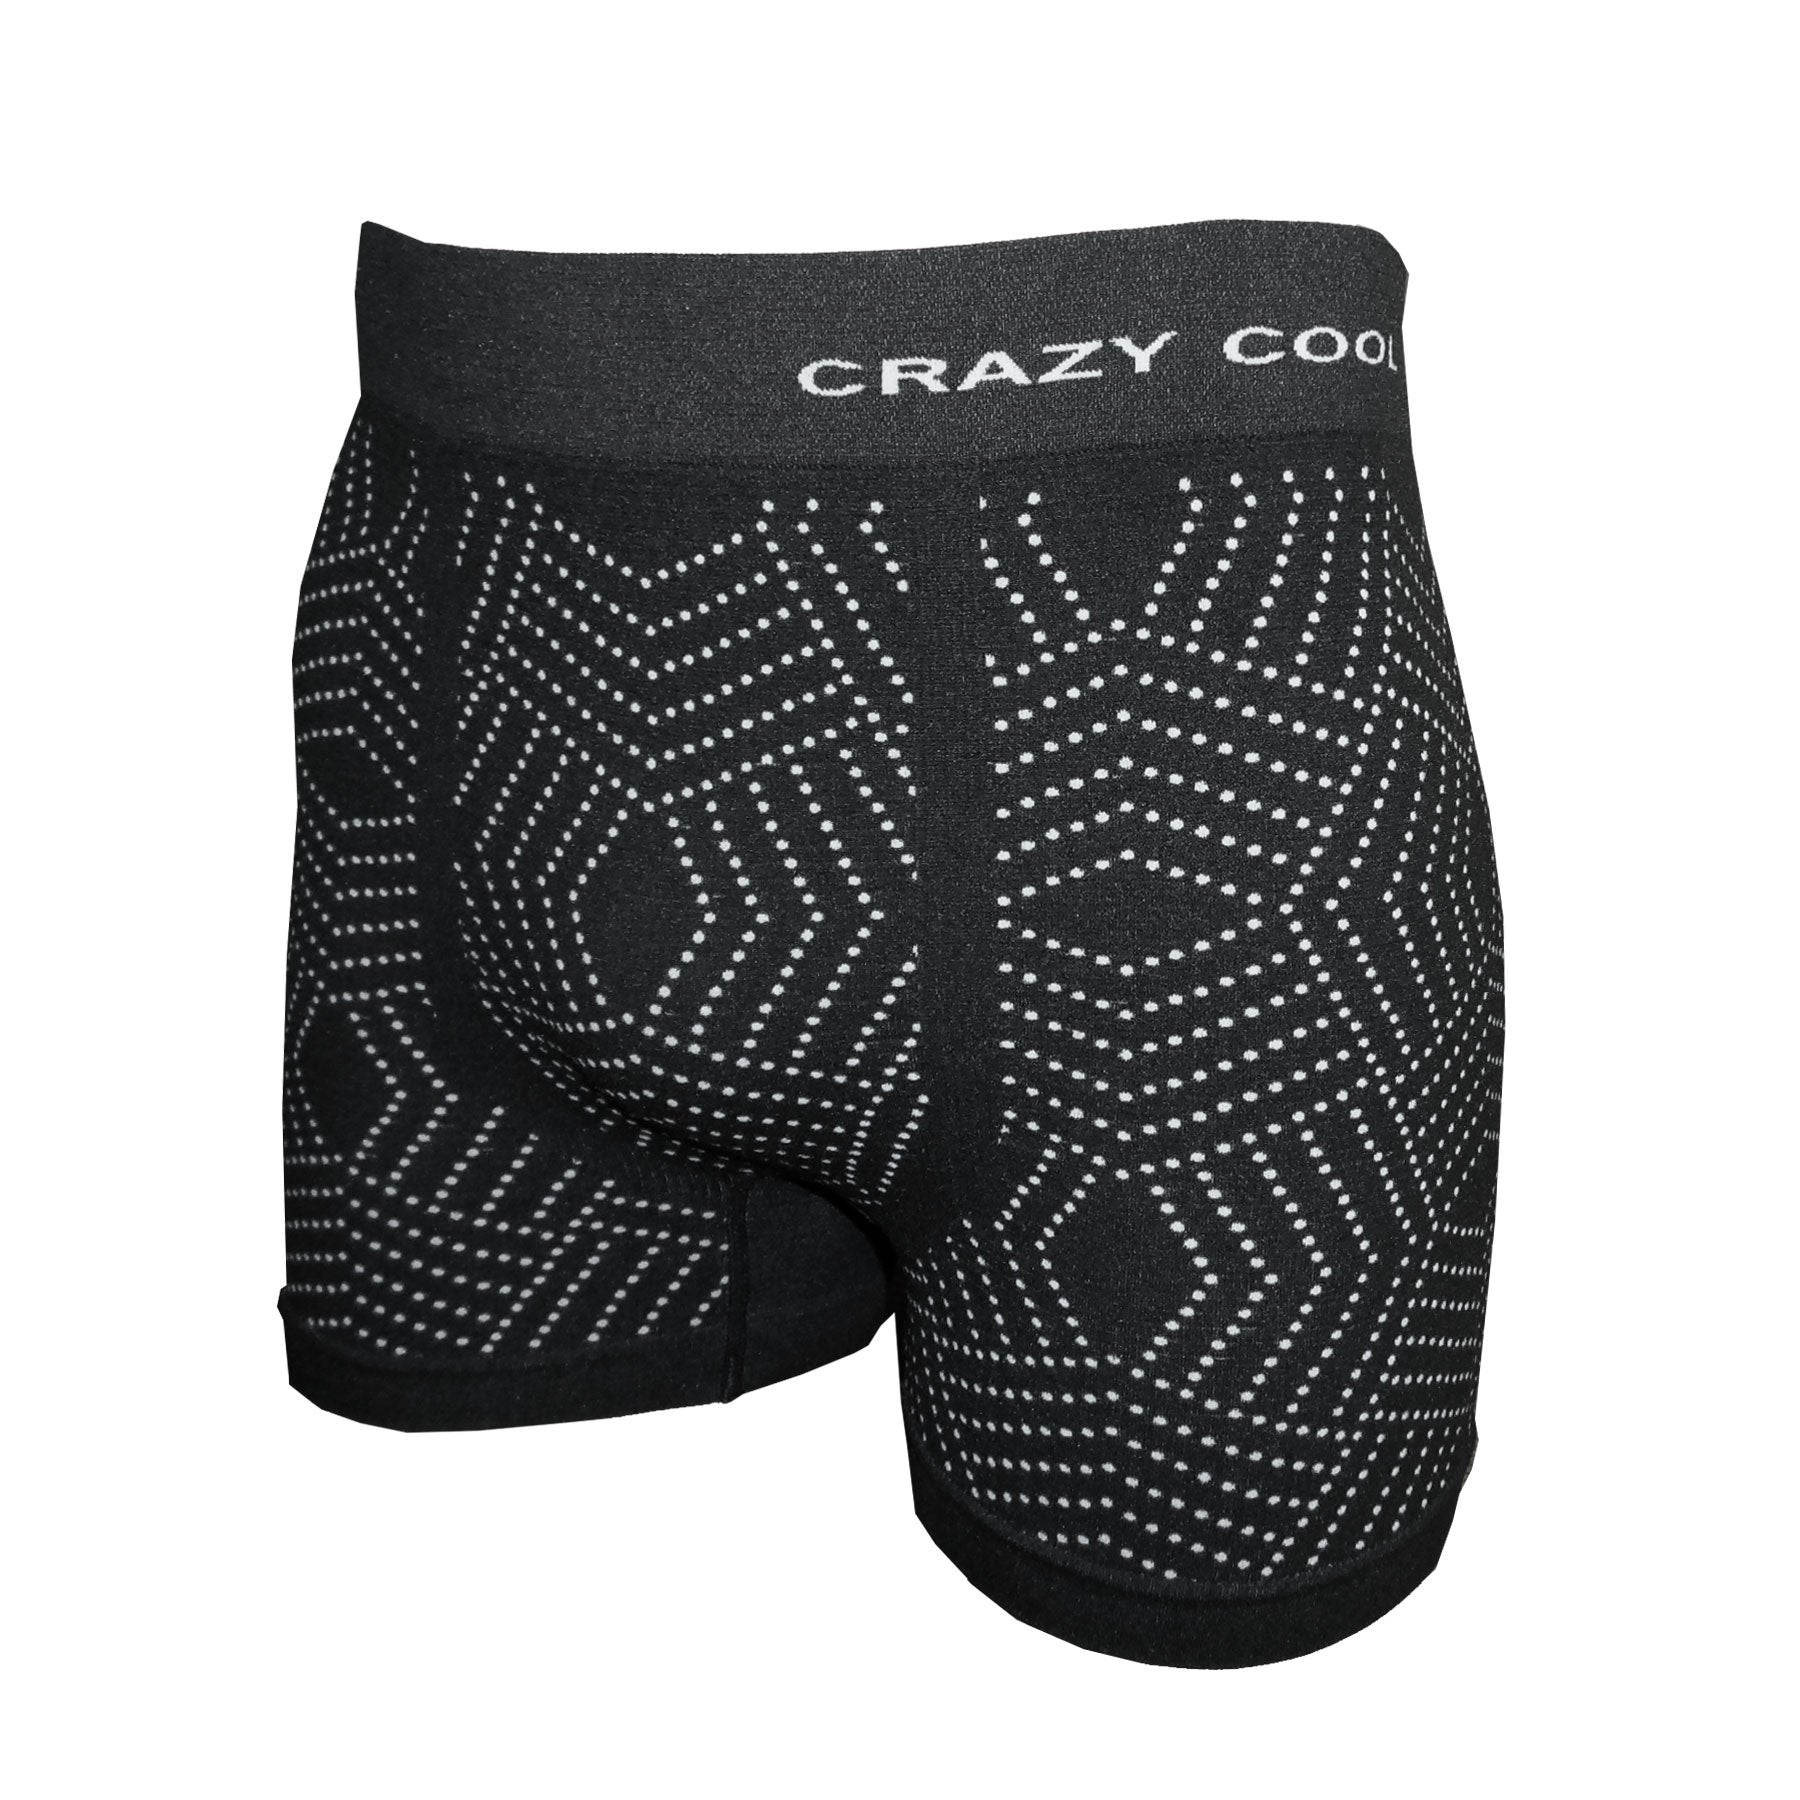 Crazy Cool Men's Seamless Boxer Briefs Underwear 6-Pack Set (Skull) 